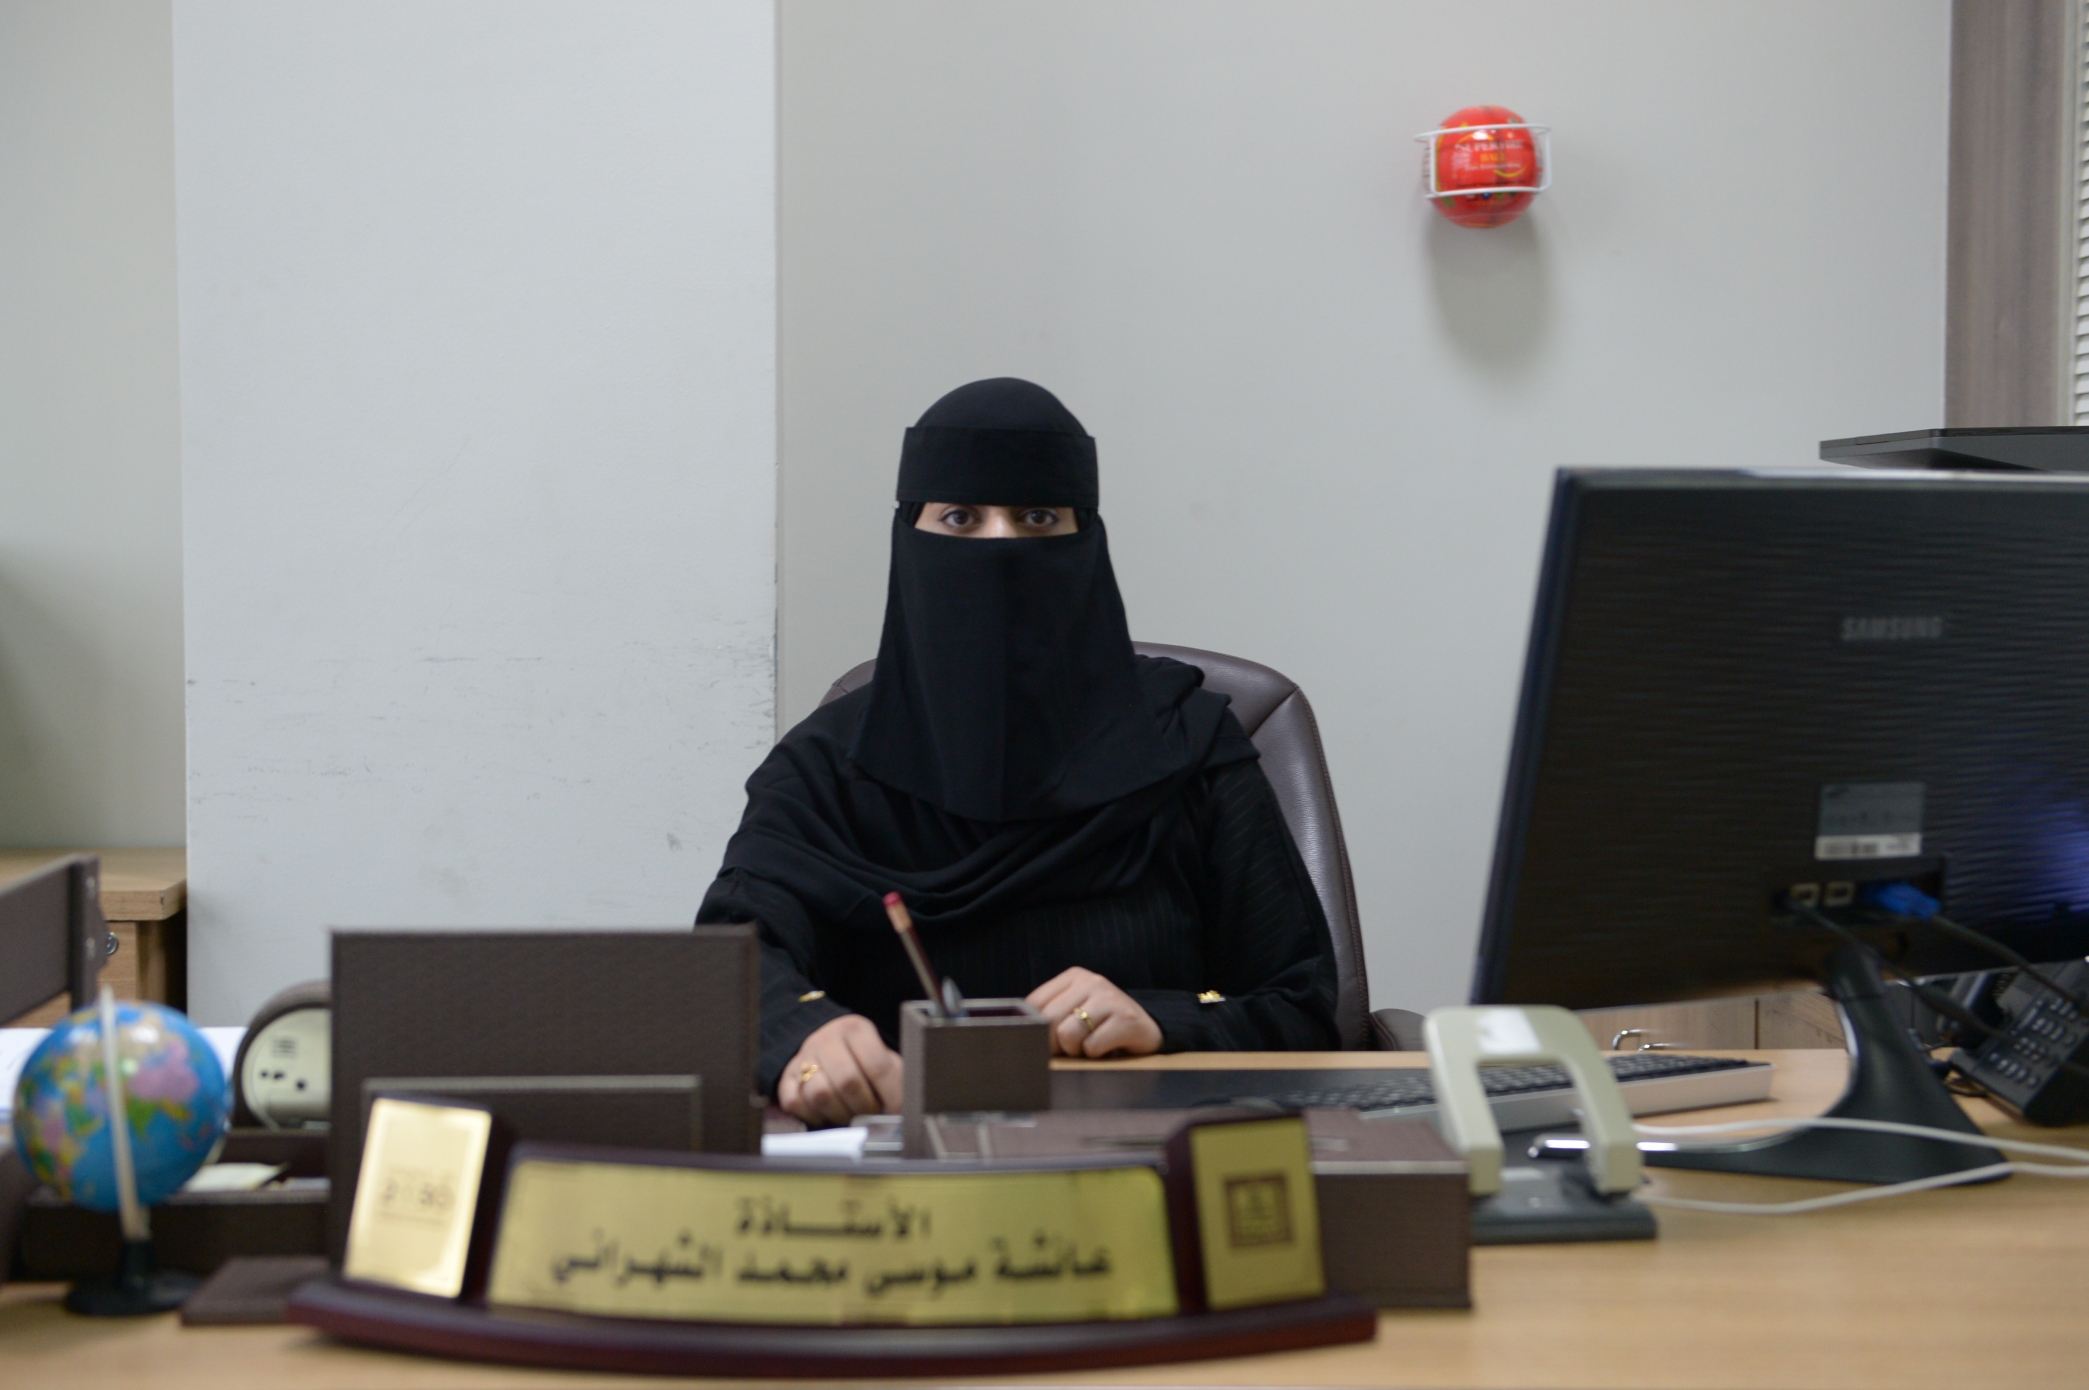 عائشة الشهراني: جائزة التميز بجامعة الملك خالد من أهم الممارسات التحفيزية